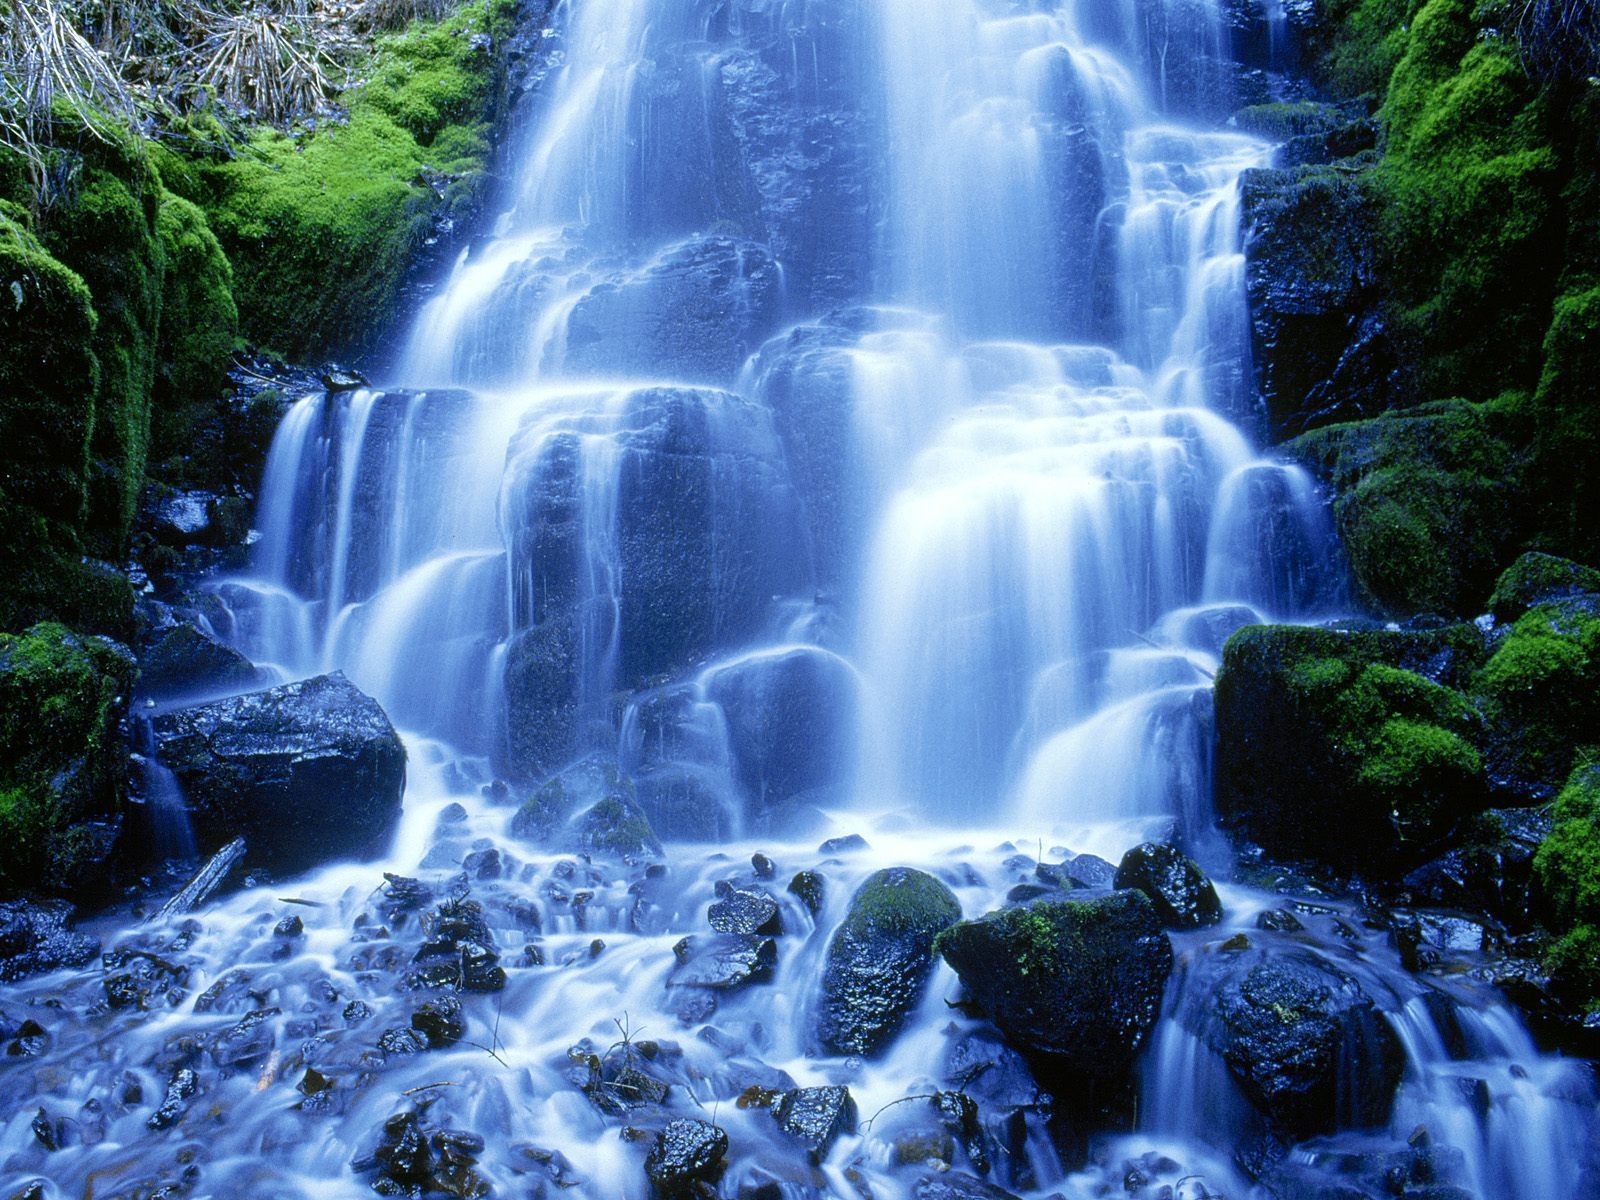 Mountains-Waterfalls-mountains-and-waterfalls-5836100-1600-1200.jpg